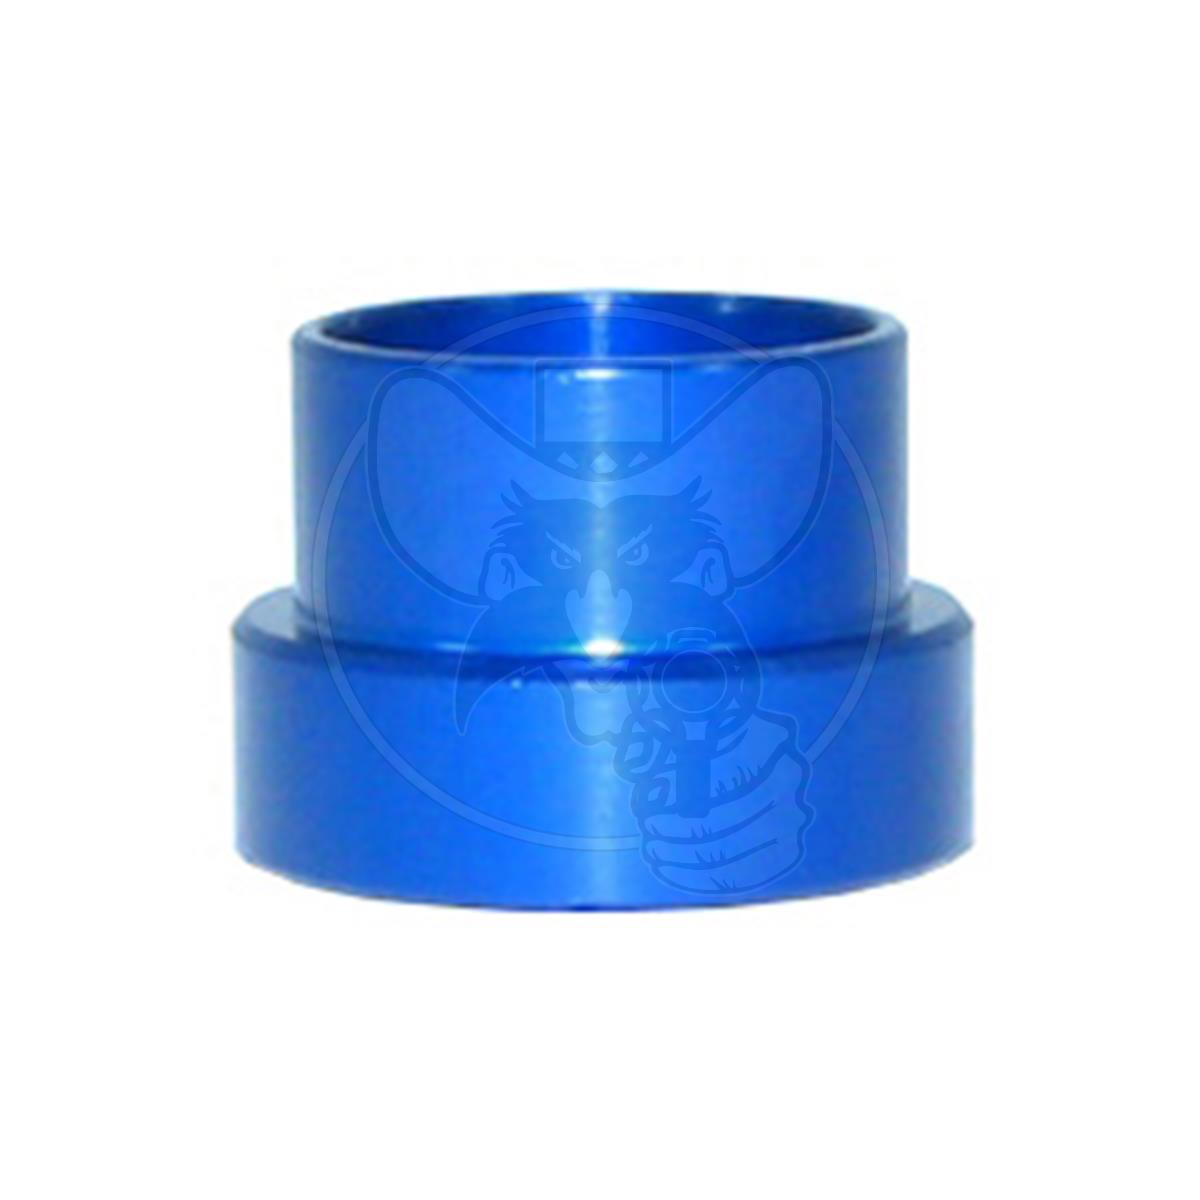 SPEEDFLOW -10AN (5/8") ALUMINIUM TUBE SLEEVE - BLUE EACH